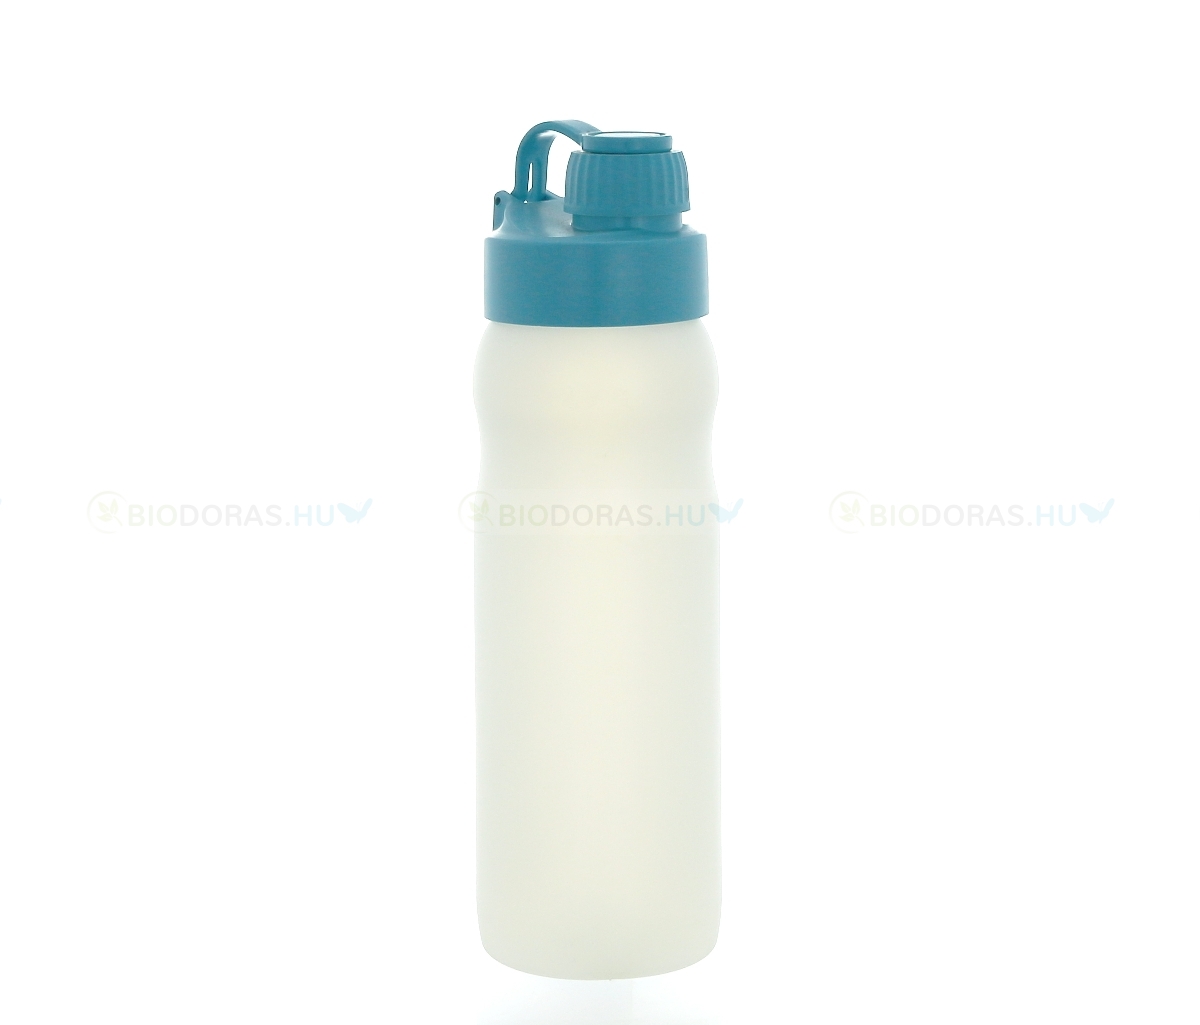 BIODORA Bioműanyag kulacs (sportpalack) visszazárható kupakkal, fehér-türkizkék színben - 500 ml